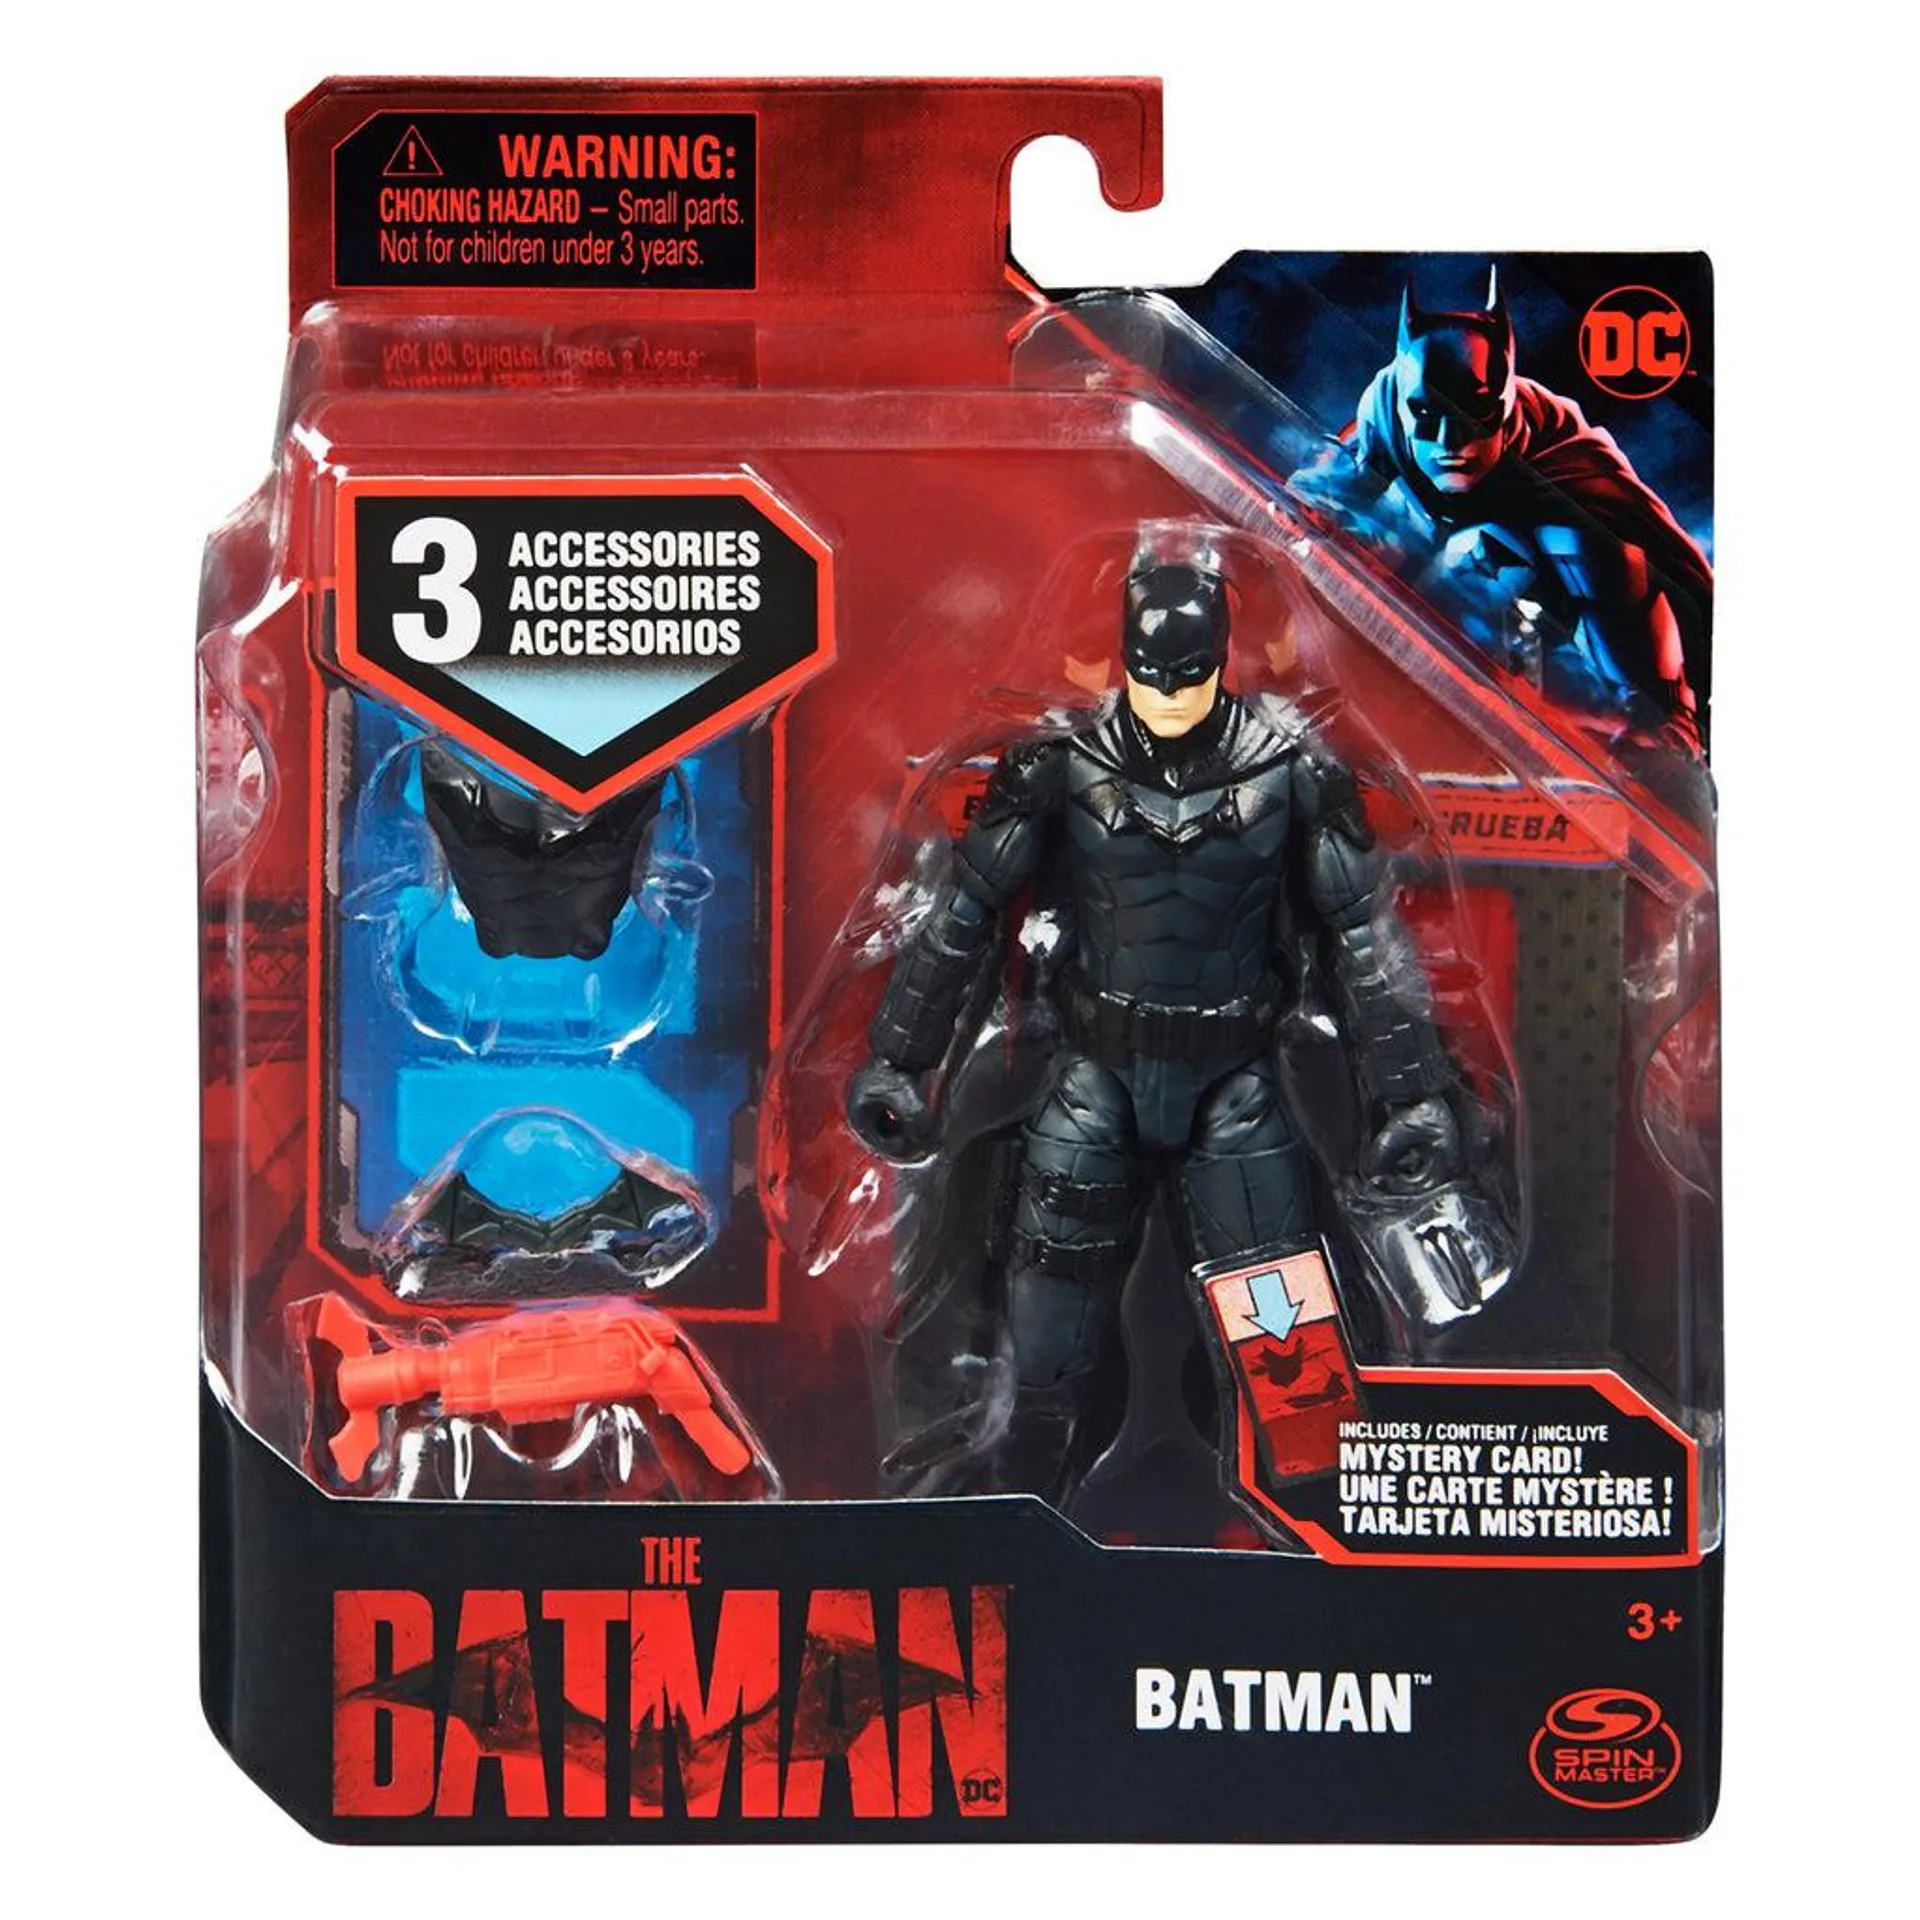 Batman Figura de Acción con Accesorios, Juguete Coleccionable